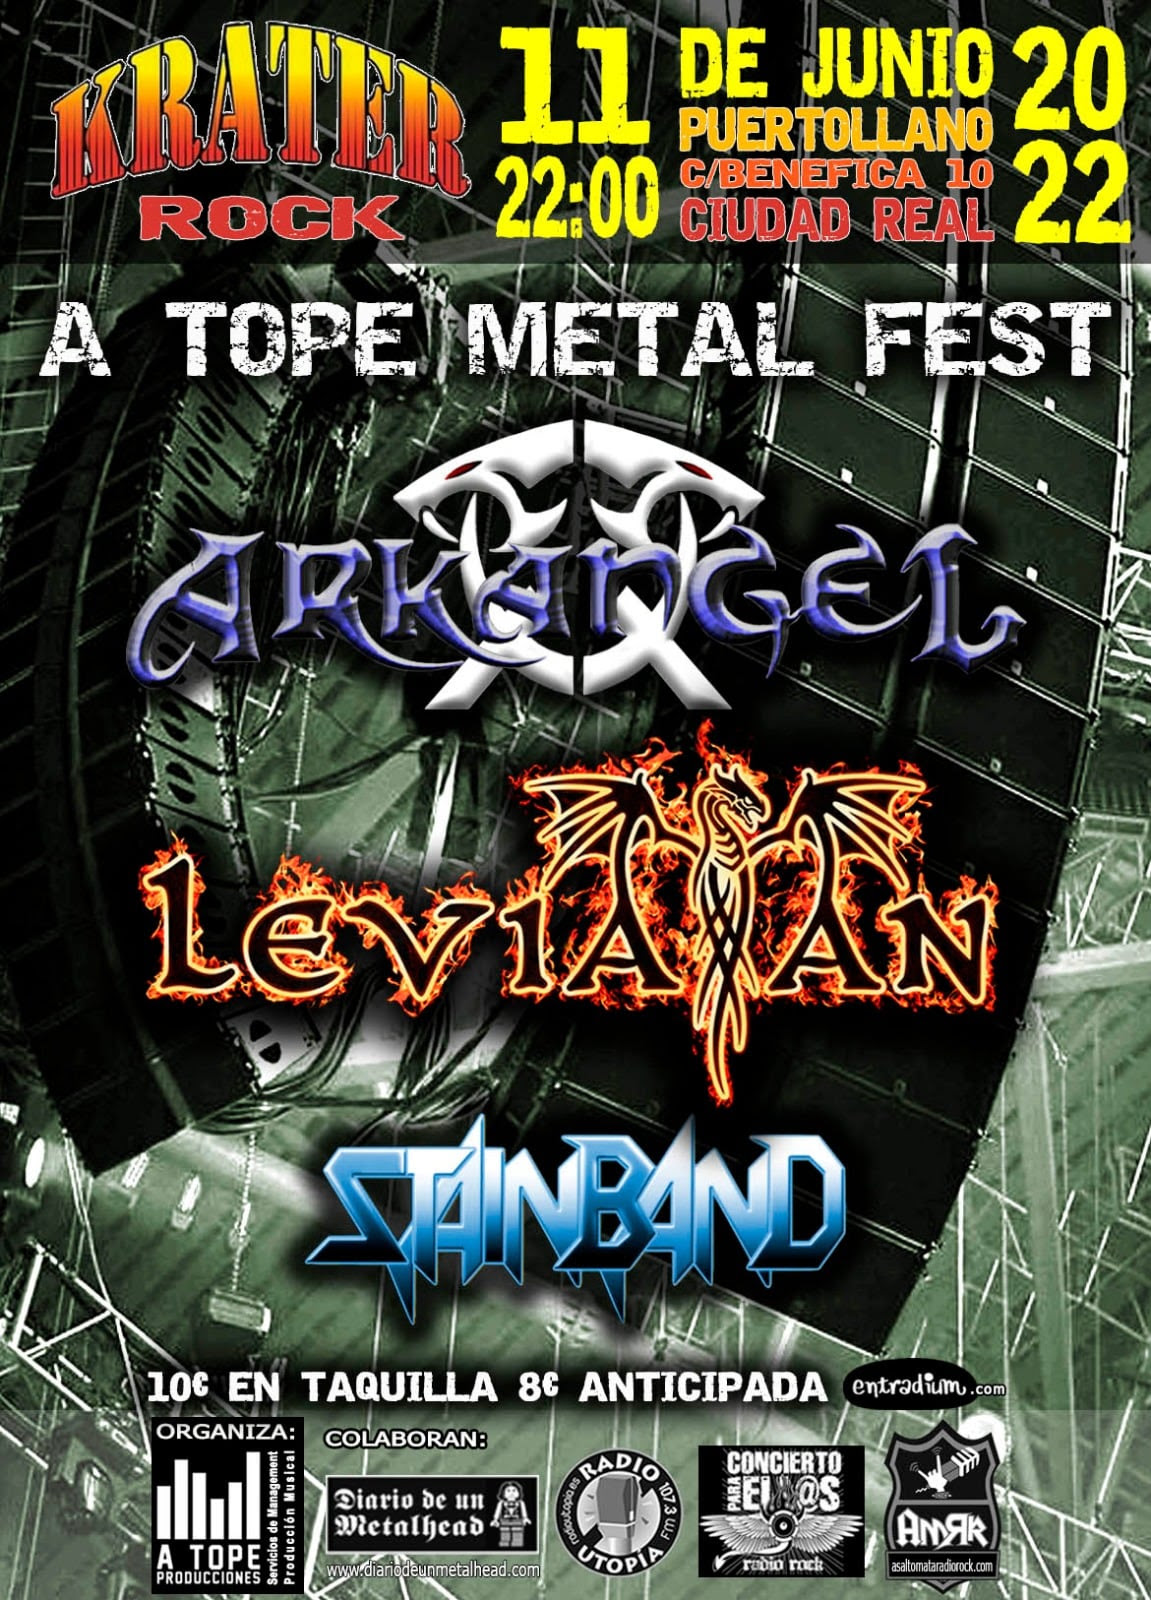 A Tope Metal Fest el 11 de junio en Puertollano (Ciudad Real)